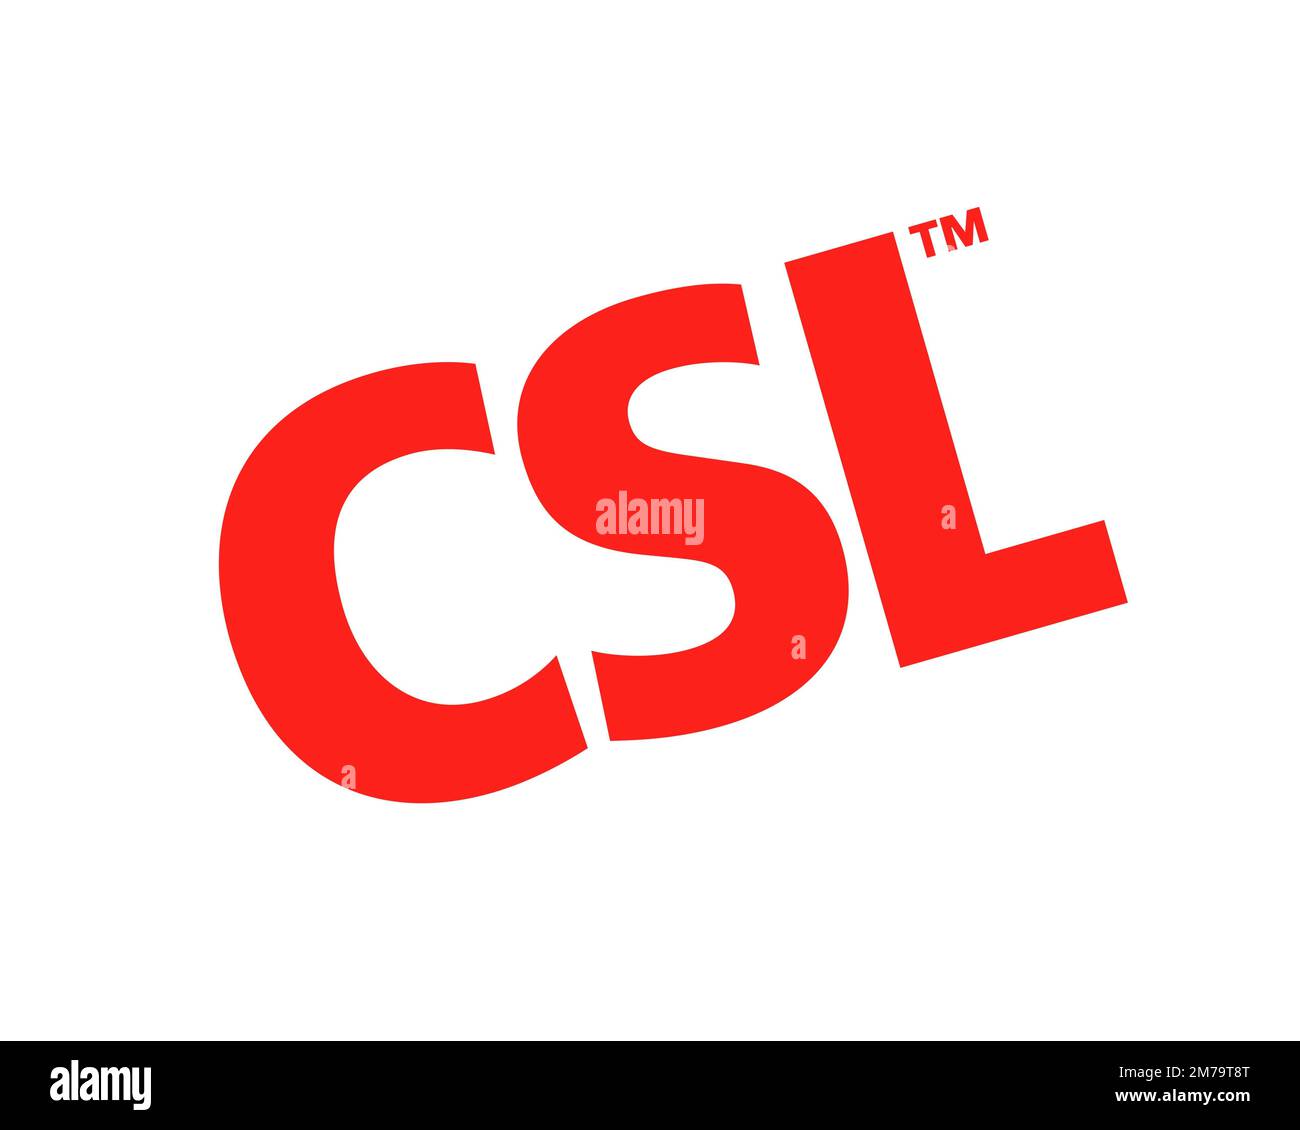 CSL Limited, logo pivoté, fond blanc Banque D'Images